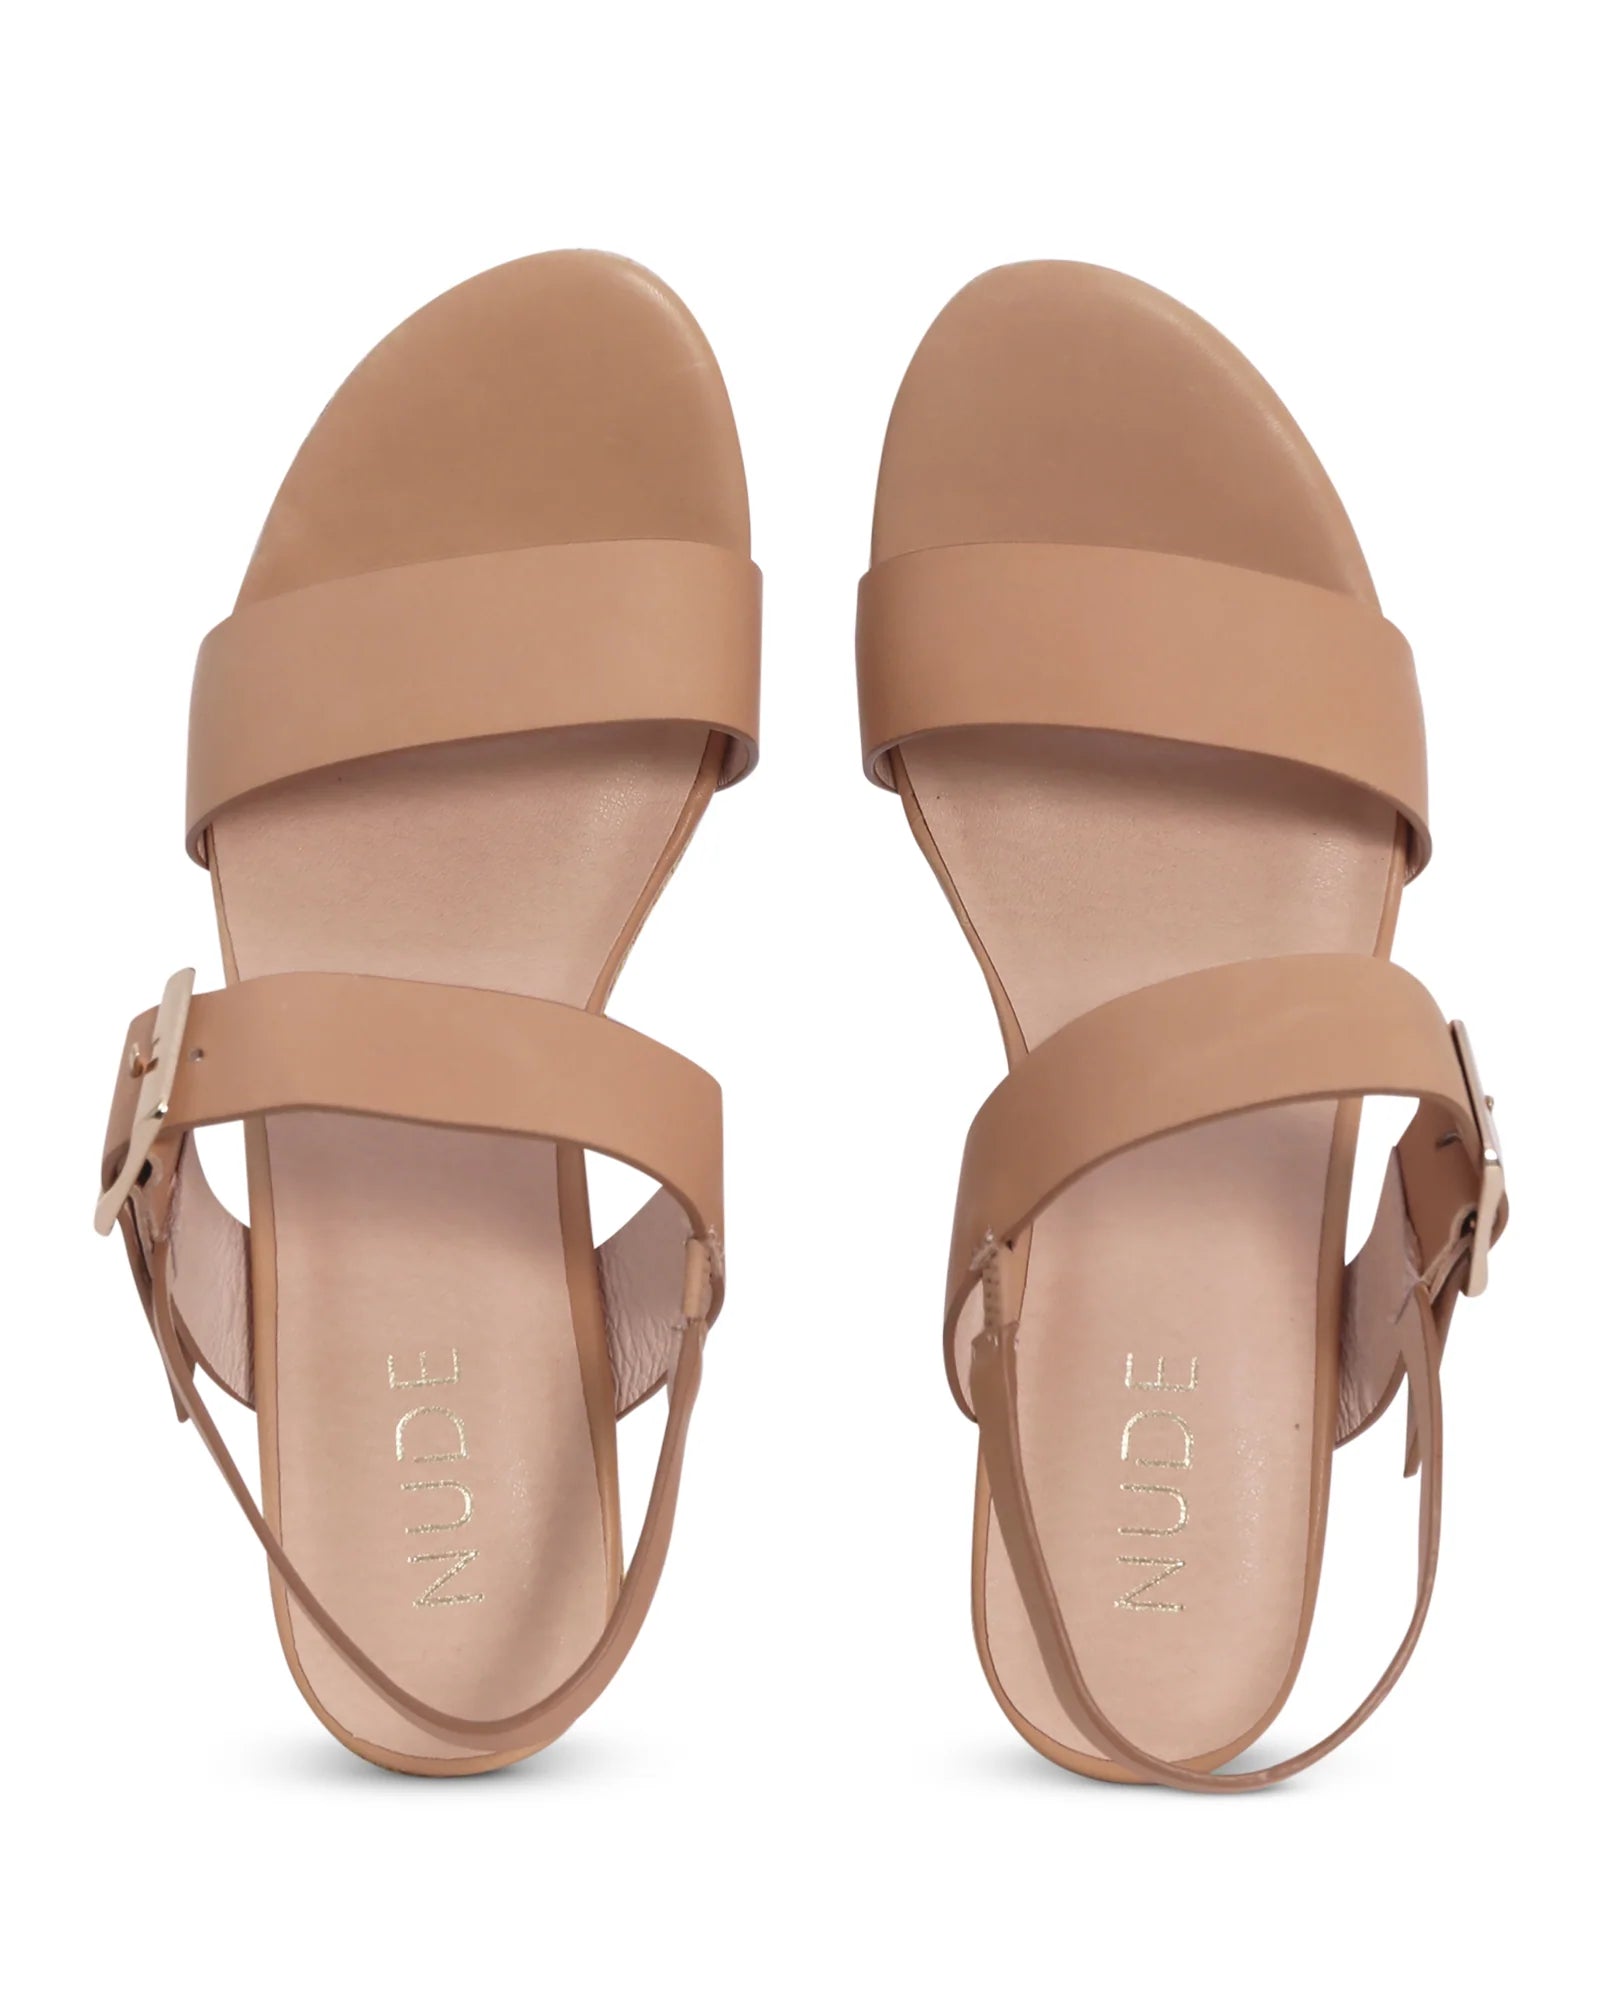 SOLDANA WEDGE - NUDE FOOTWEAR - 36, 37, 38, 39, 40, 41, BF, CREAM, Nude, SLING BACK, wedge, womens footwear - Stomp Shoes Darwin